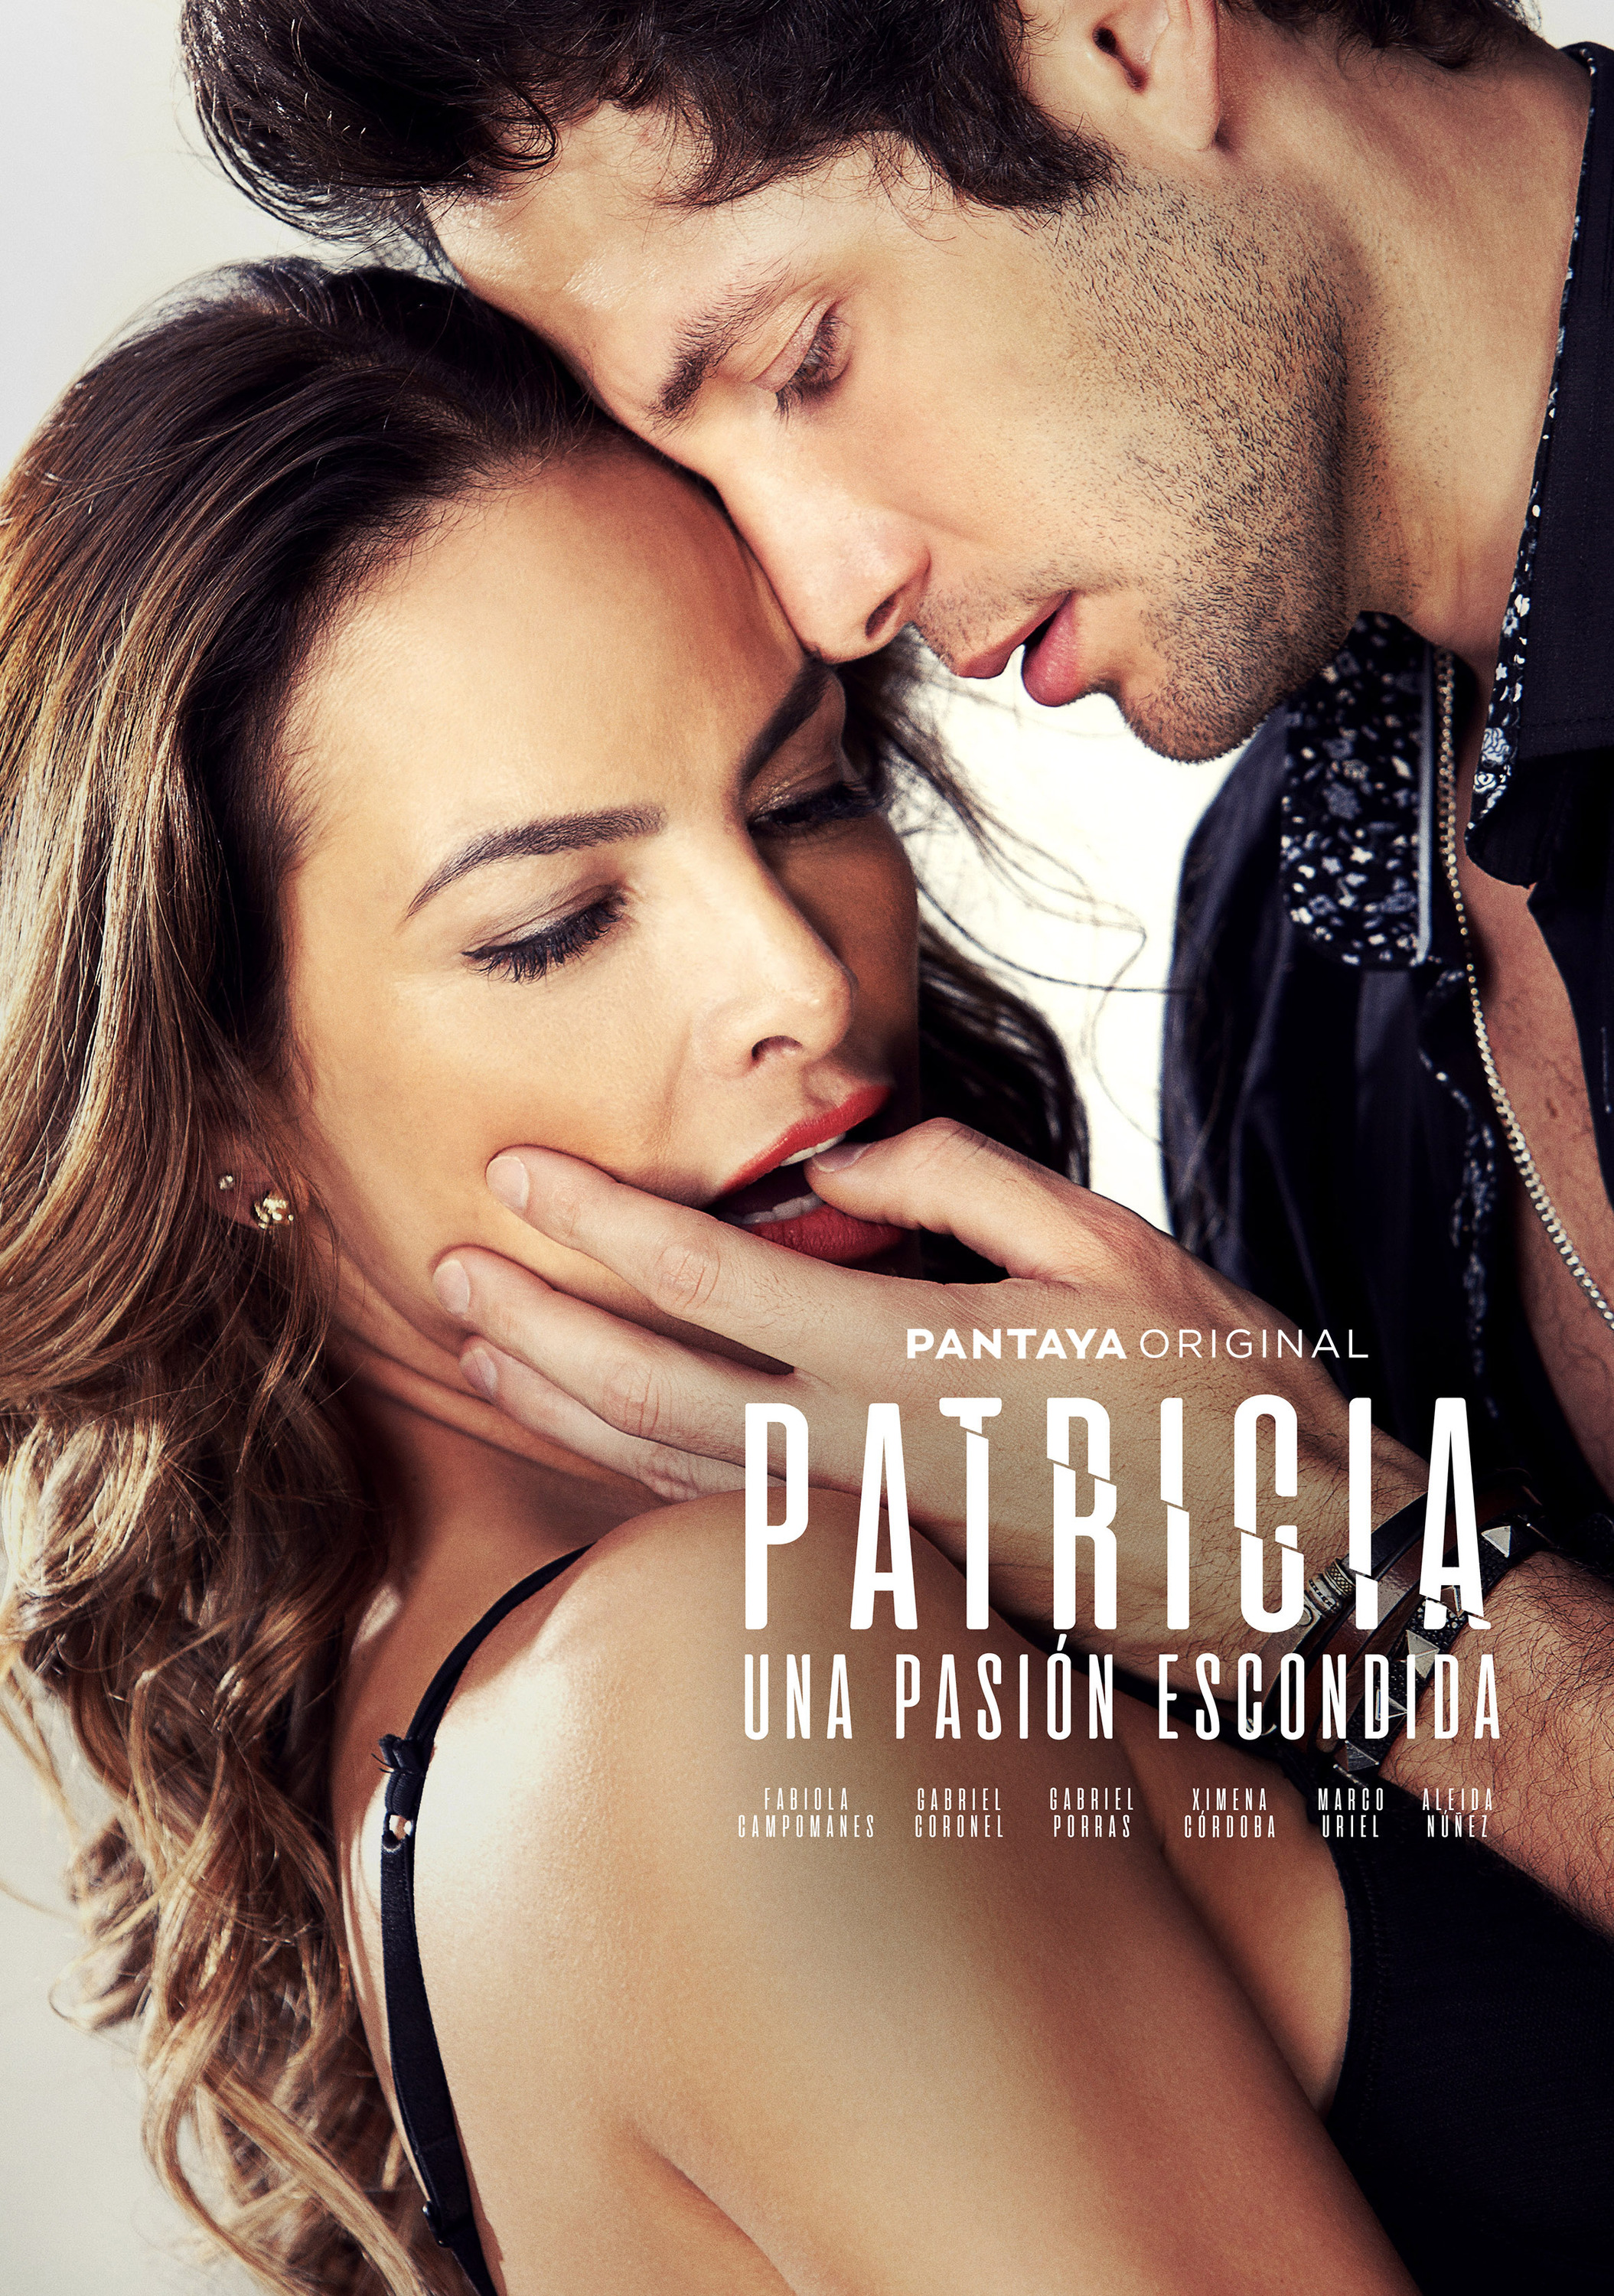 Mega Sized TV Poster Image for Patricia, Secretos de una Pasión (#1 of 4)